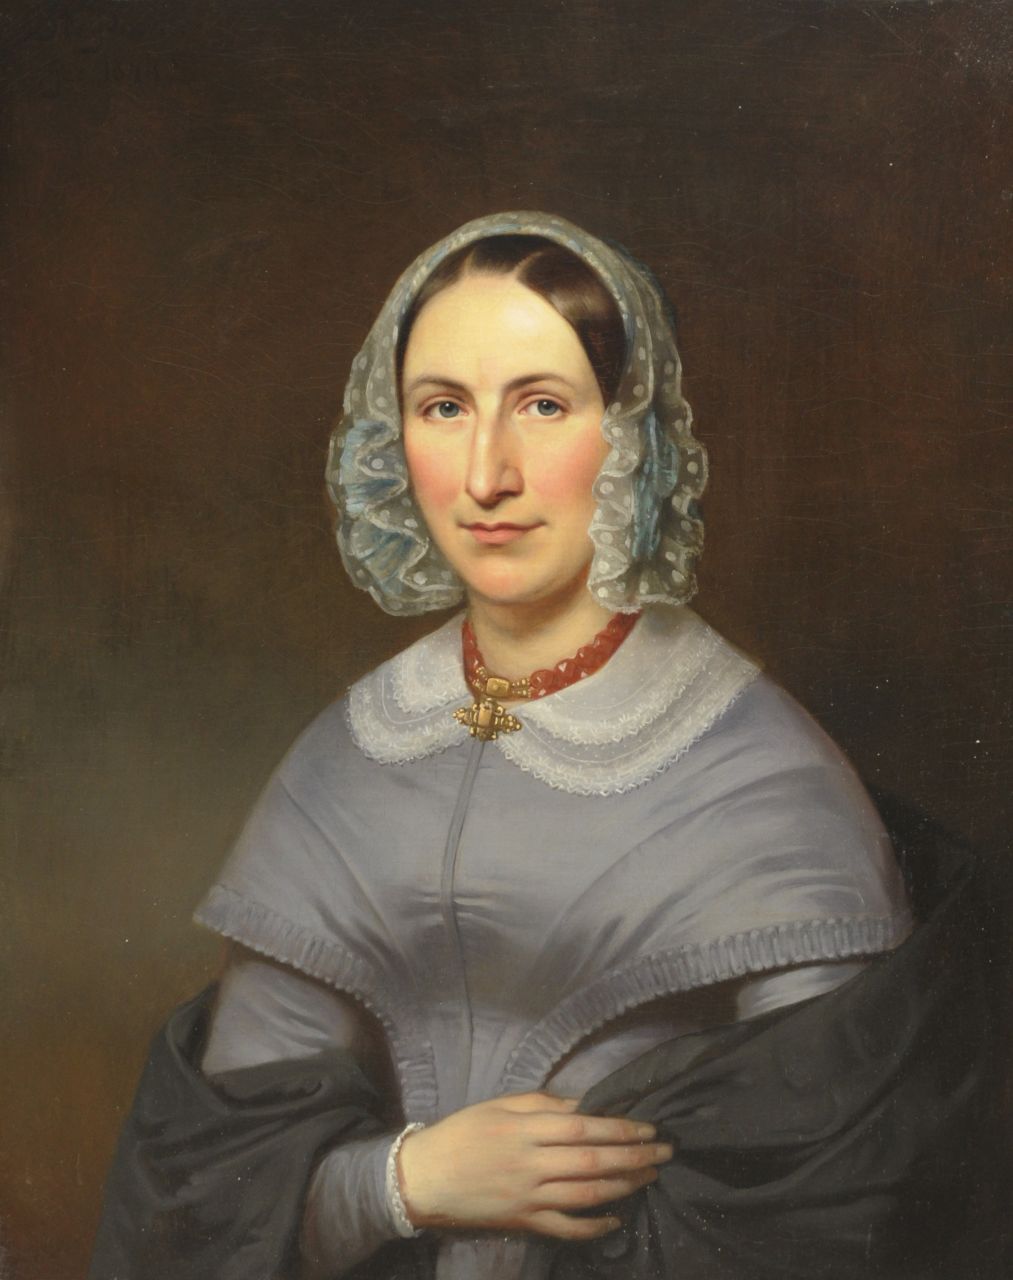 Poorter B. de | Bastiaan de Poorter | Schilderijen te koop aangeboden | Portret van mevrouw Teixera de Mattos, olieverf op doek 81,4 x 64,8 cm, gesigneerd linksboven en gedateerd 1844